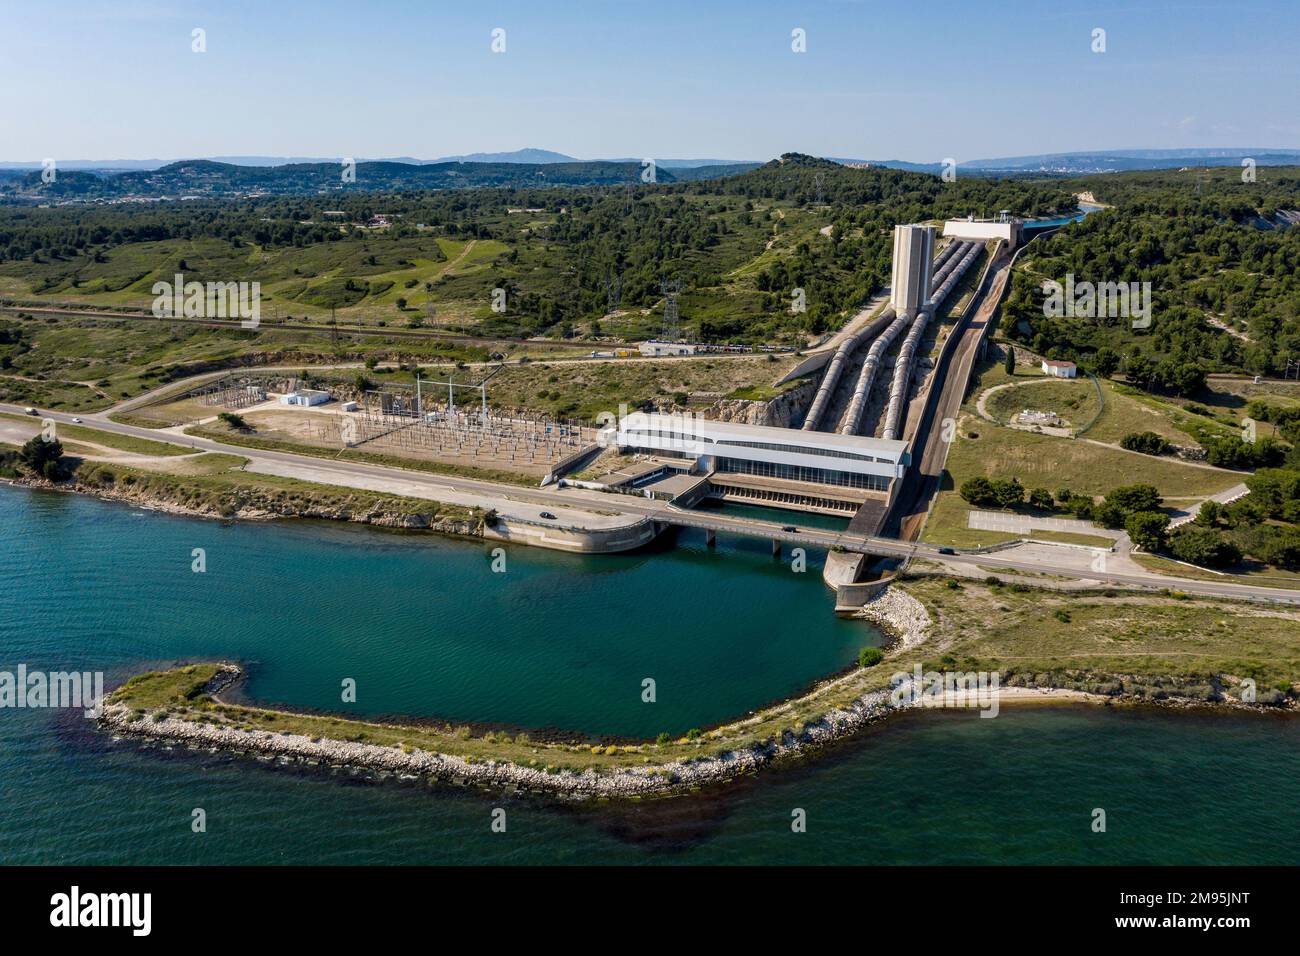 Saint-Chamas (sud-est de la France) : vue aérienne de la centrale hydroélectrique exploitée par EDF (Office français de l'électricité) sur l'etang de Berre p Banque D'Images